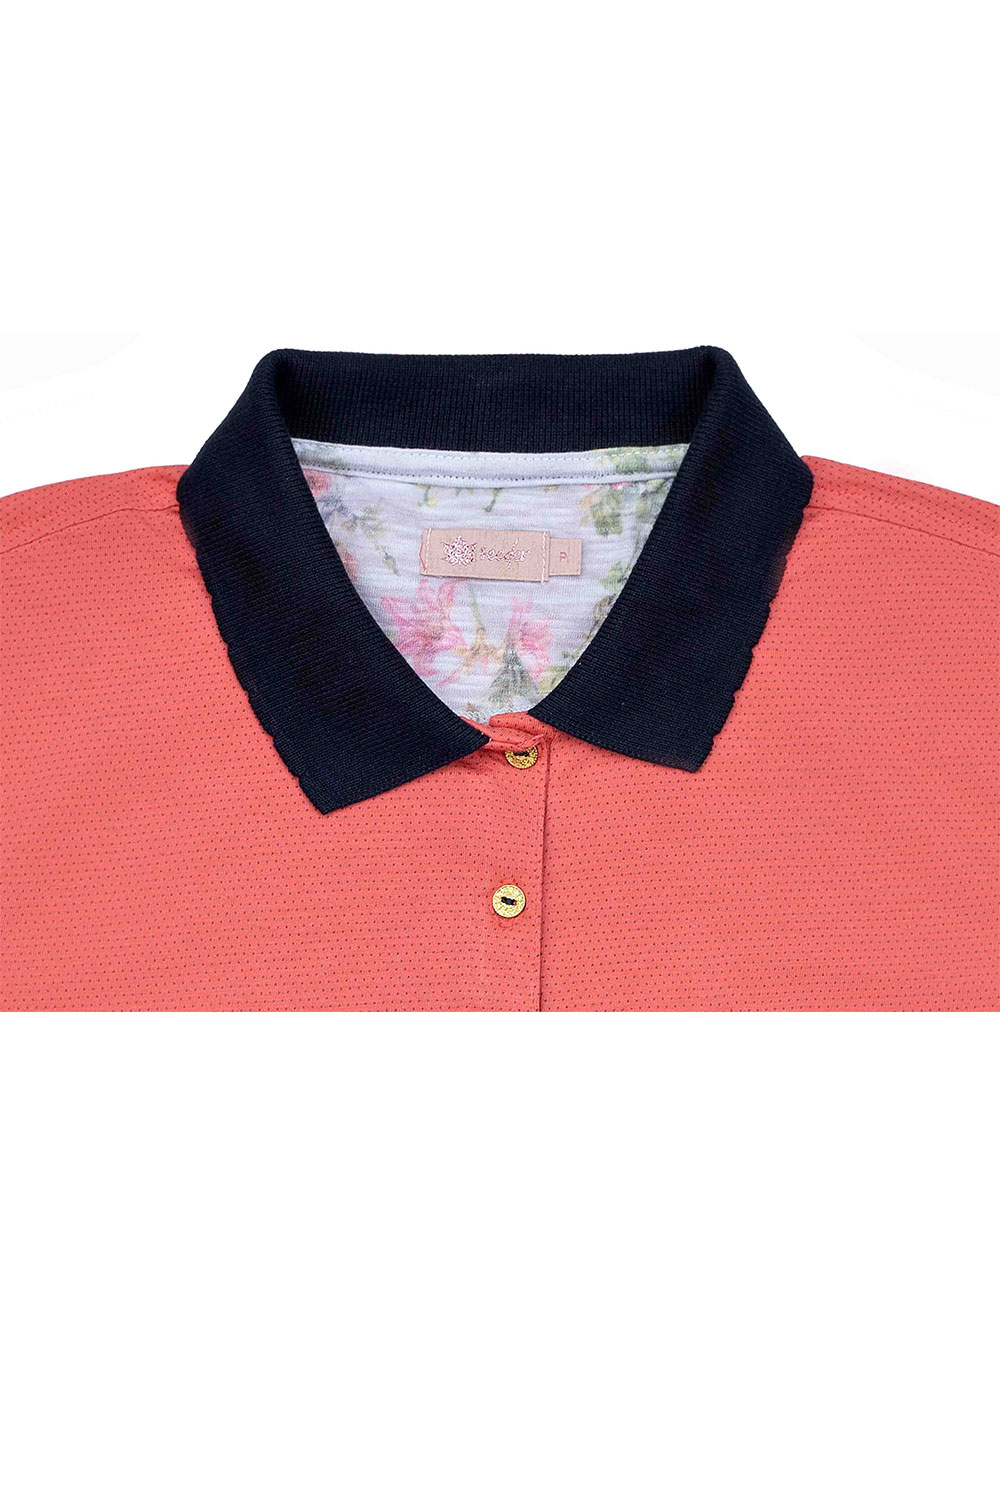 camisa femenina flamingo com marinho meia malha dots seeder se0102116 dt0112